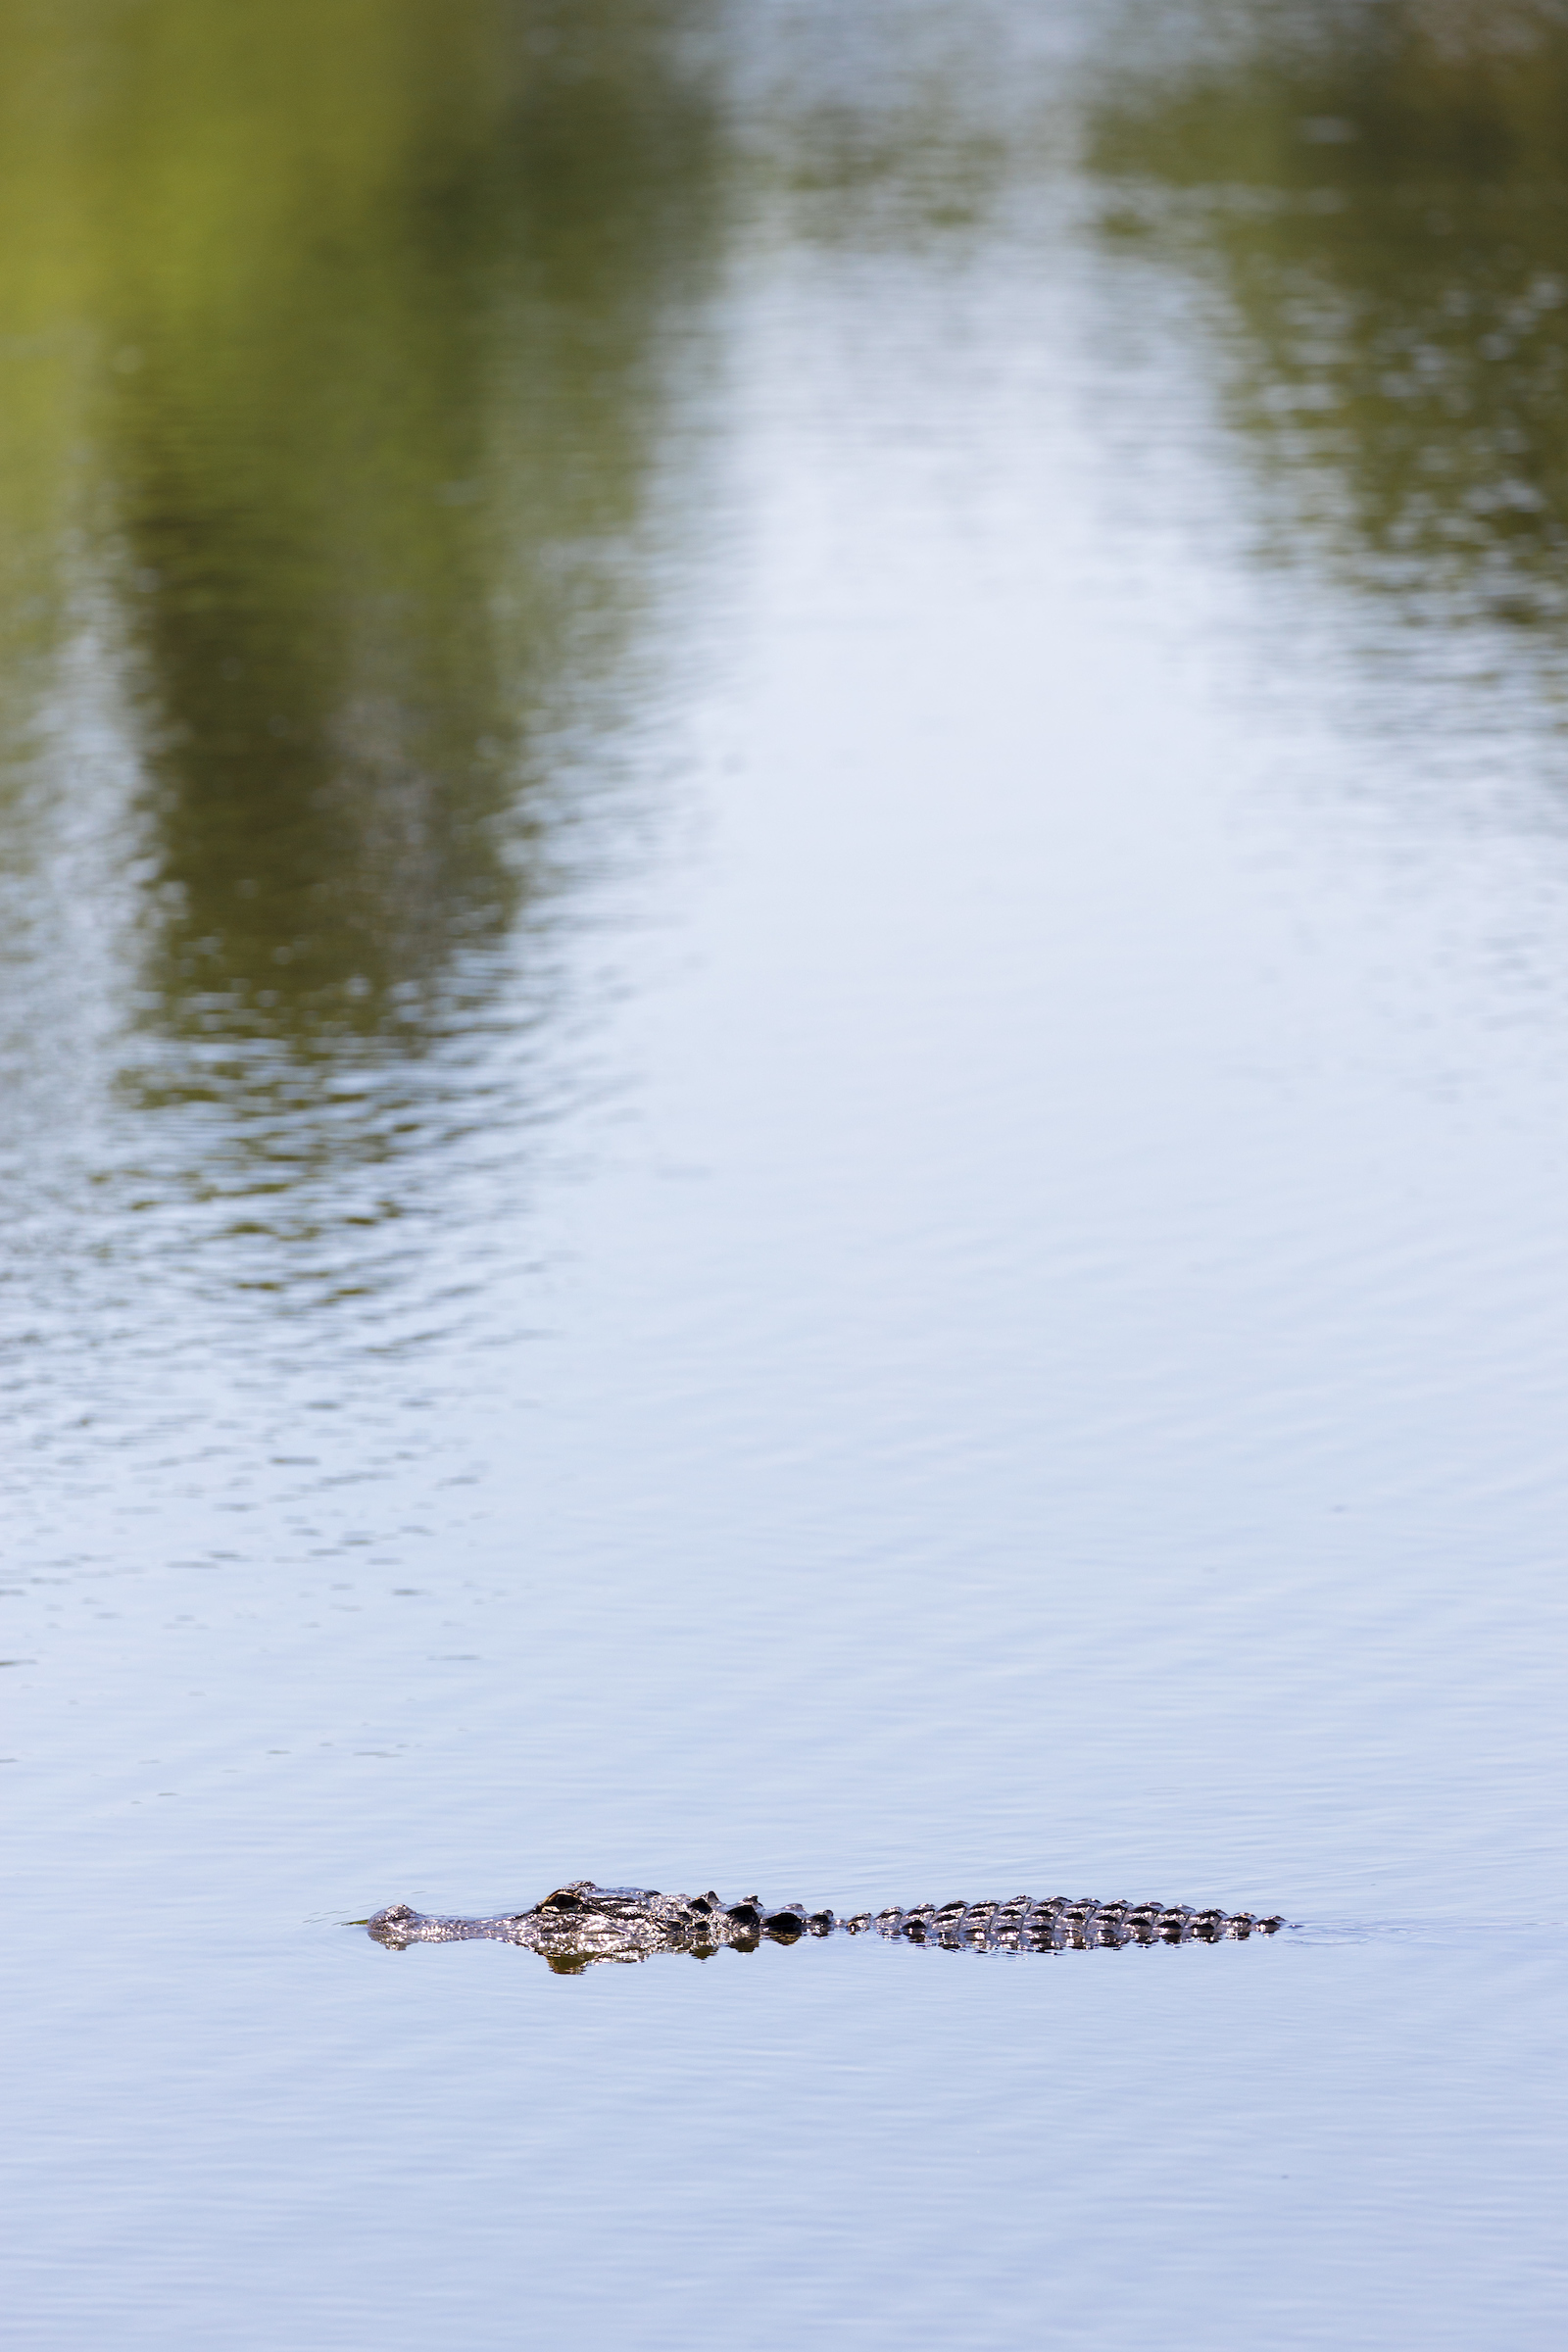 Gator swimming through Lake Alice.